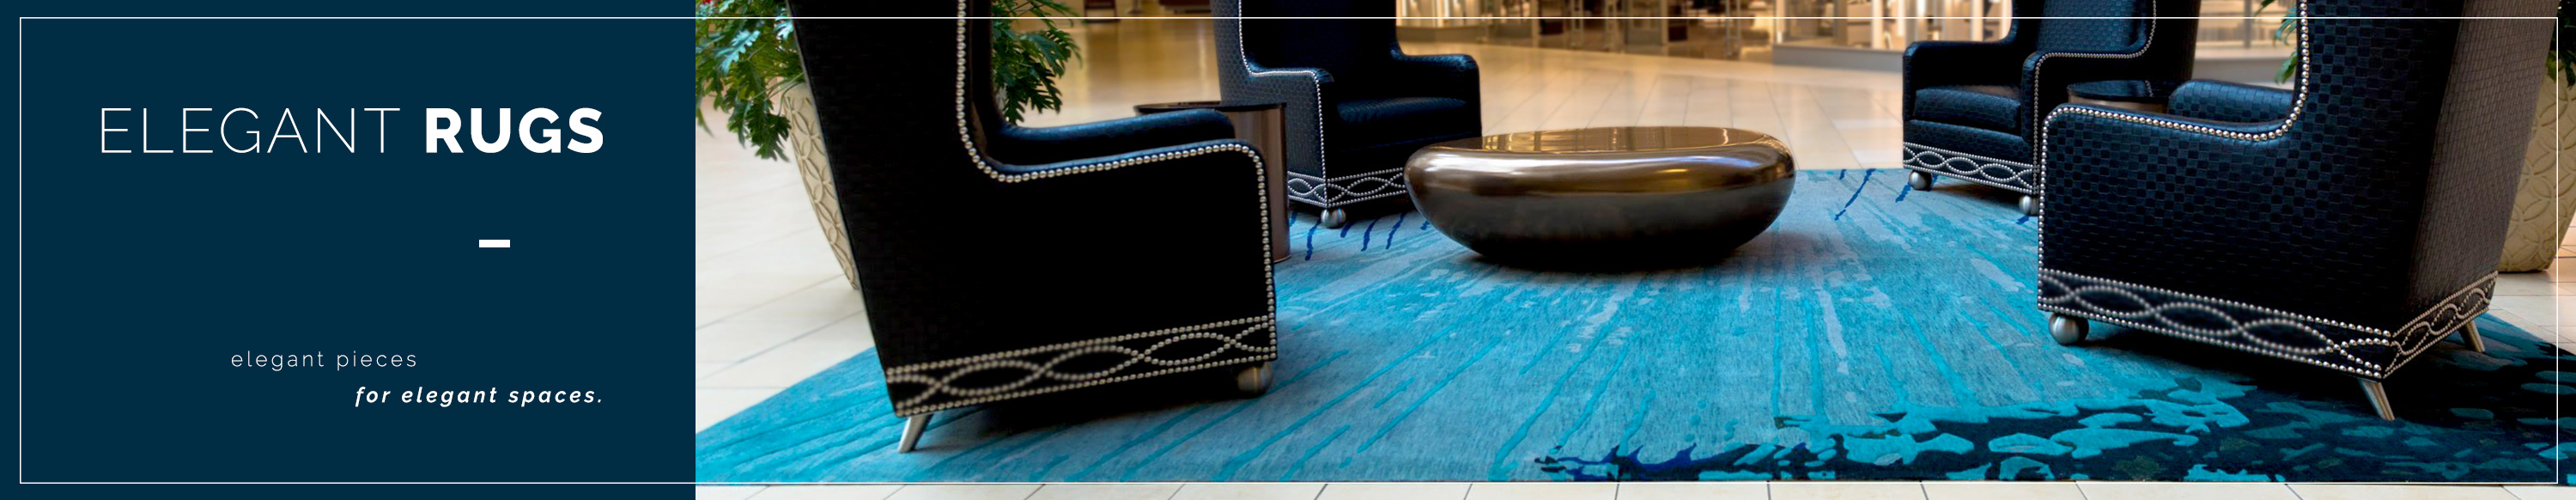 Elegant rugs for elegant spaces.